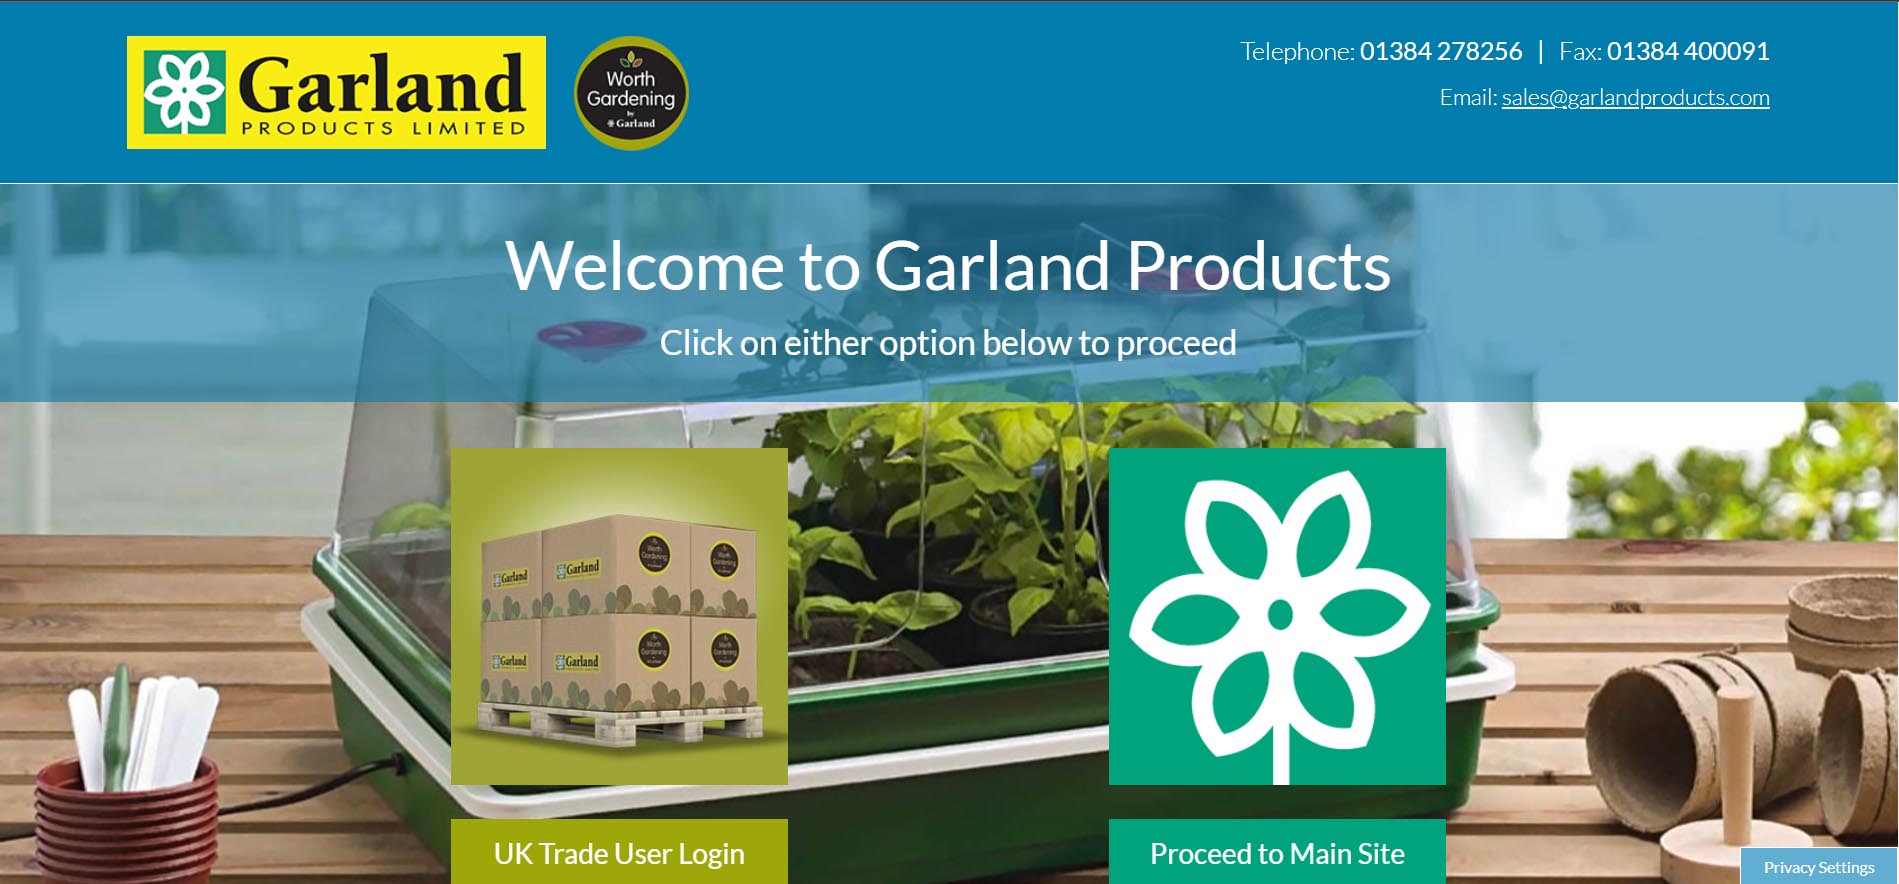 Garland/Worth Gardening New Website Launches